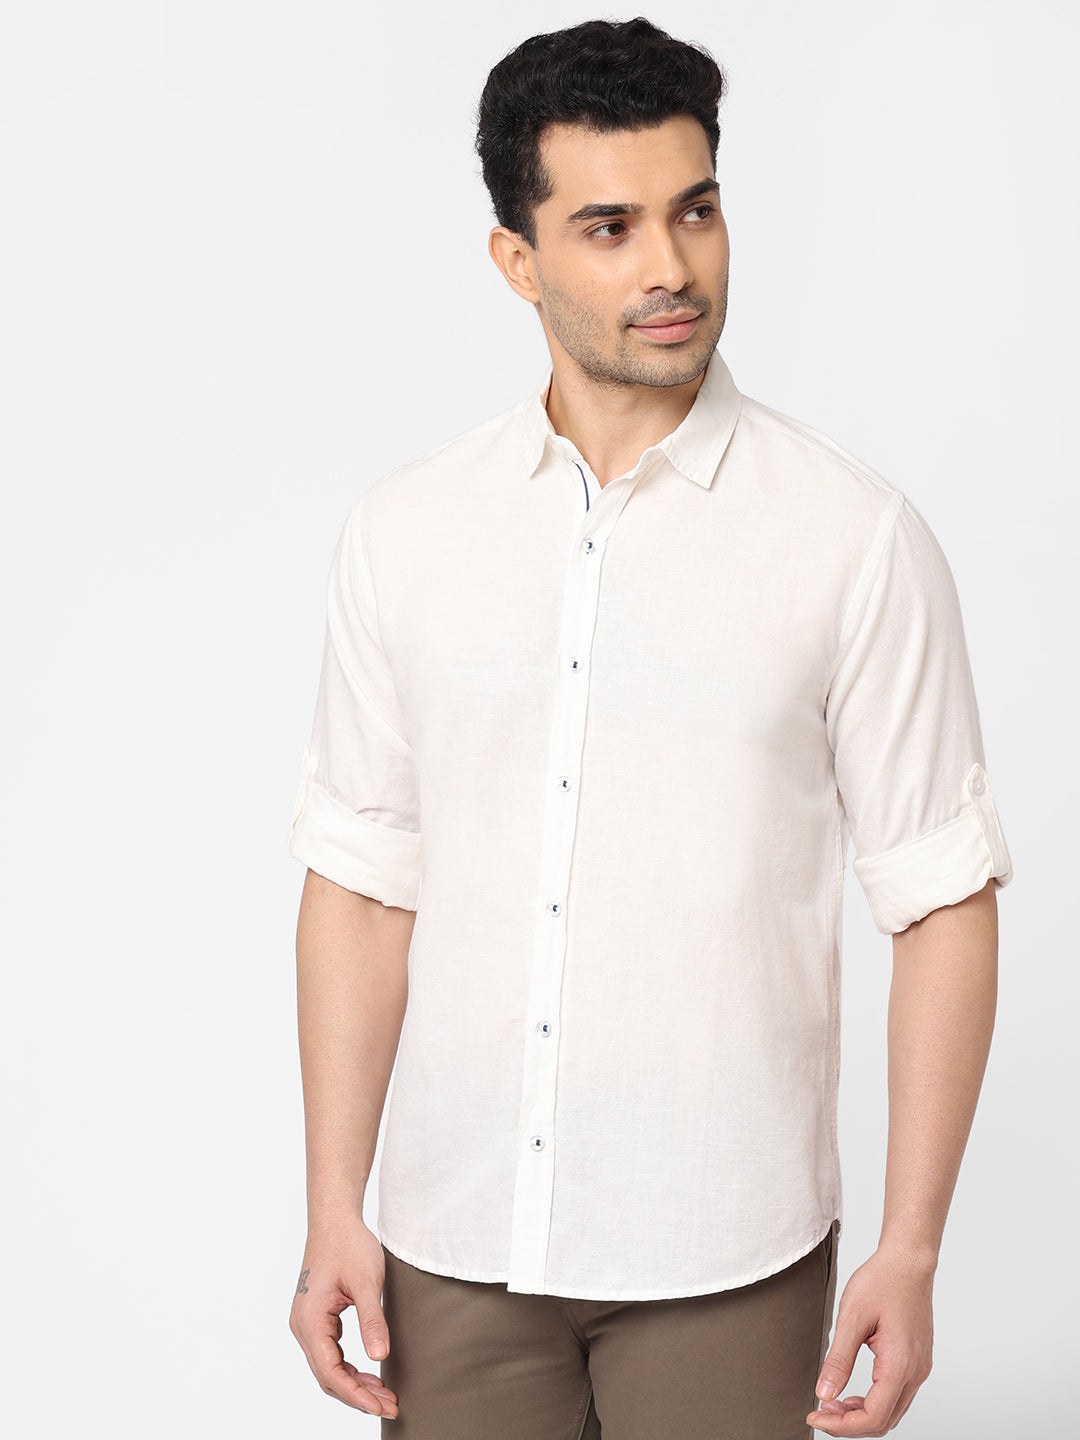 Men's White Linen Cotton Slim Fit Shirt